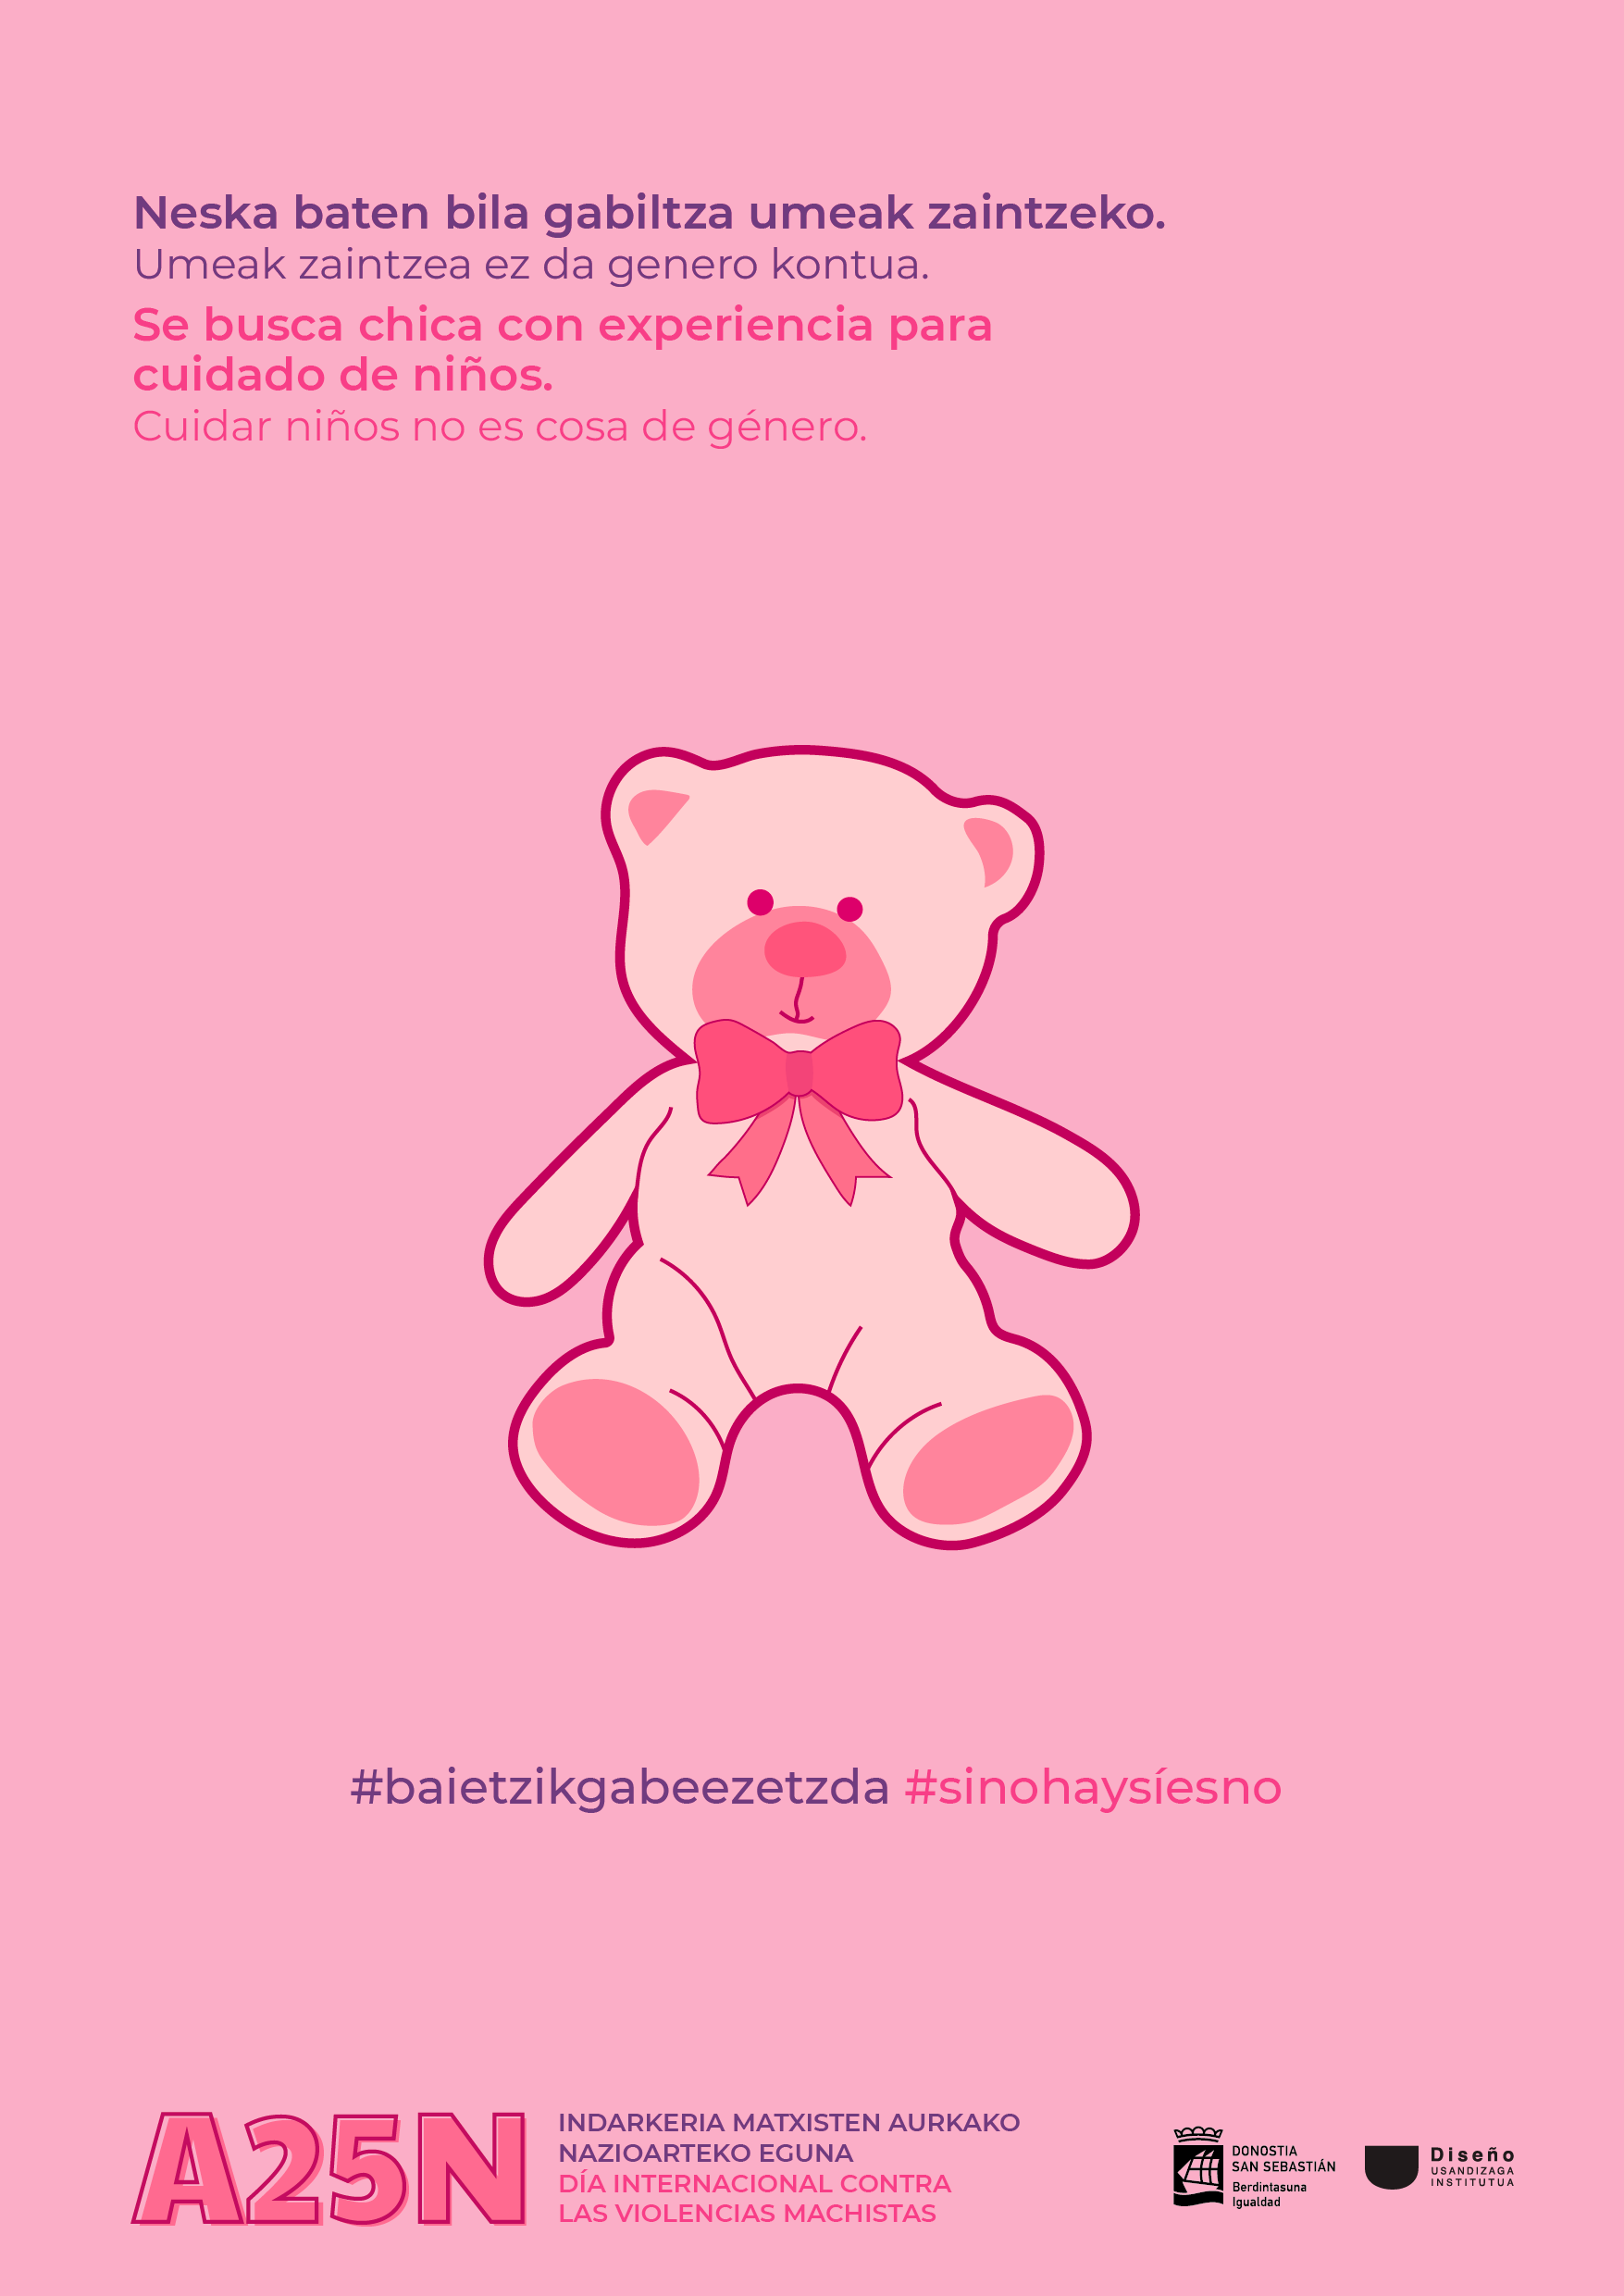 Cartel con ilustración de oso que pertenece a la campaña del 25N